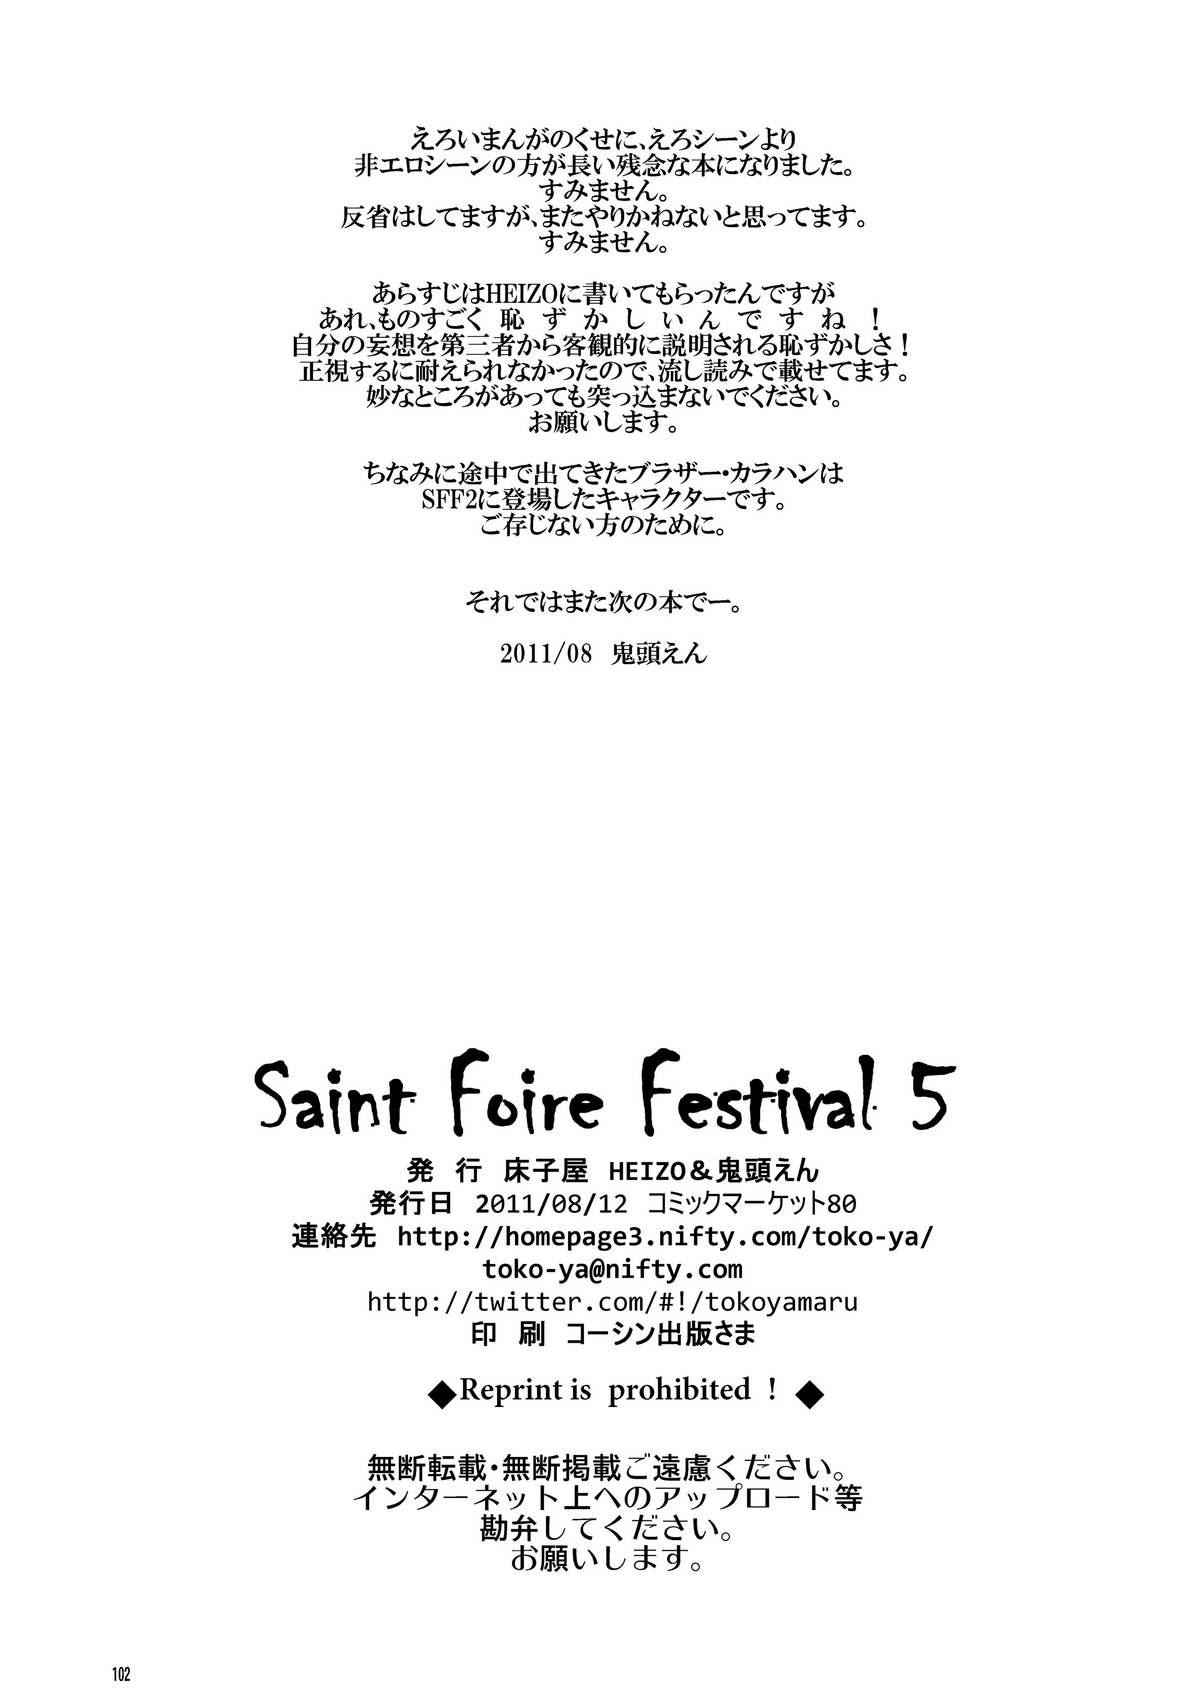 Saint Foire Festival 5 101